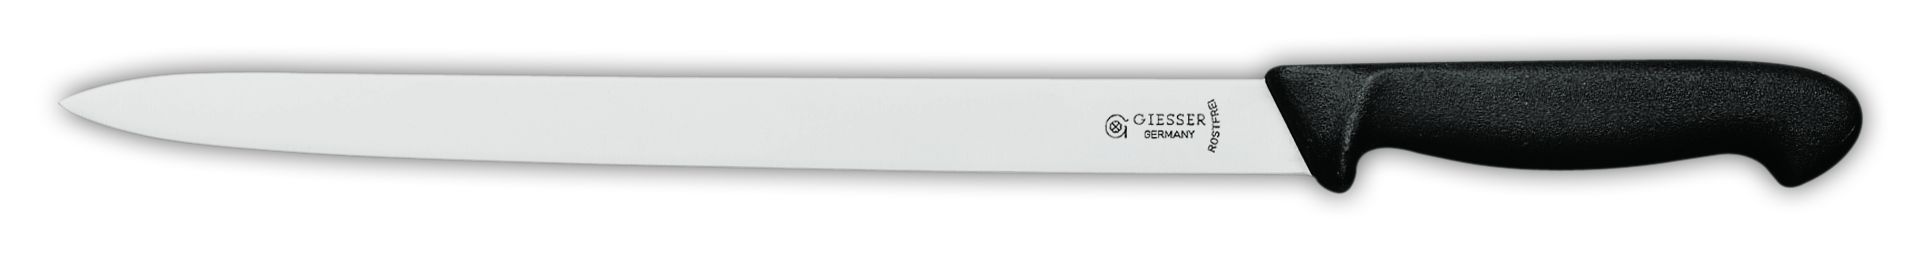 Нож для колбасных изделий 7925, 25 см,  черная рукоятка